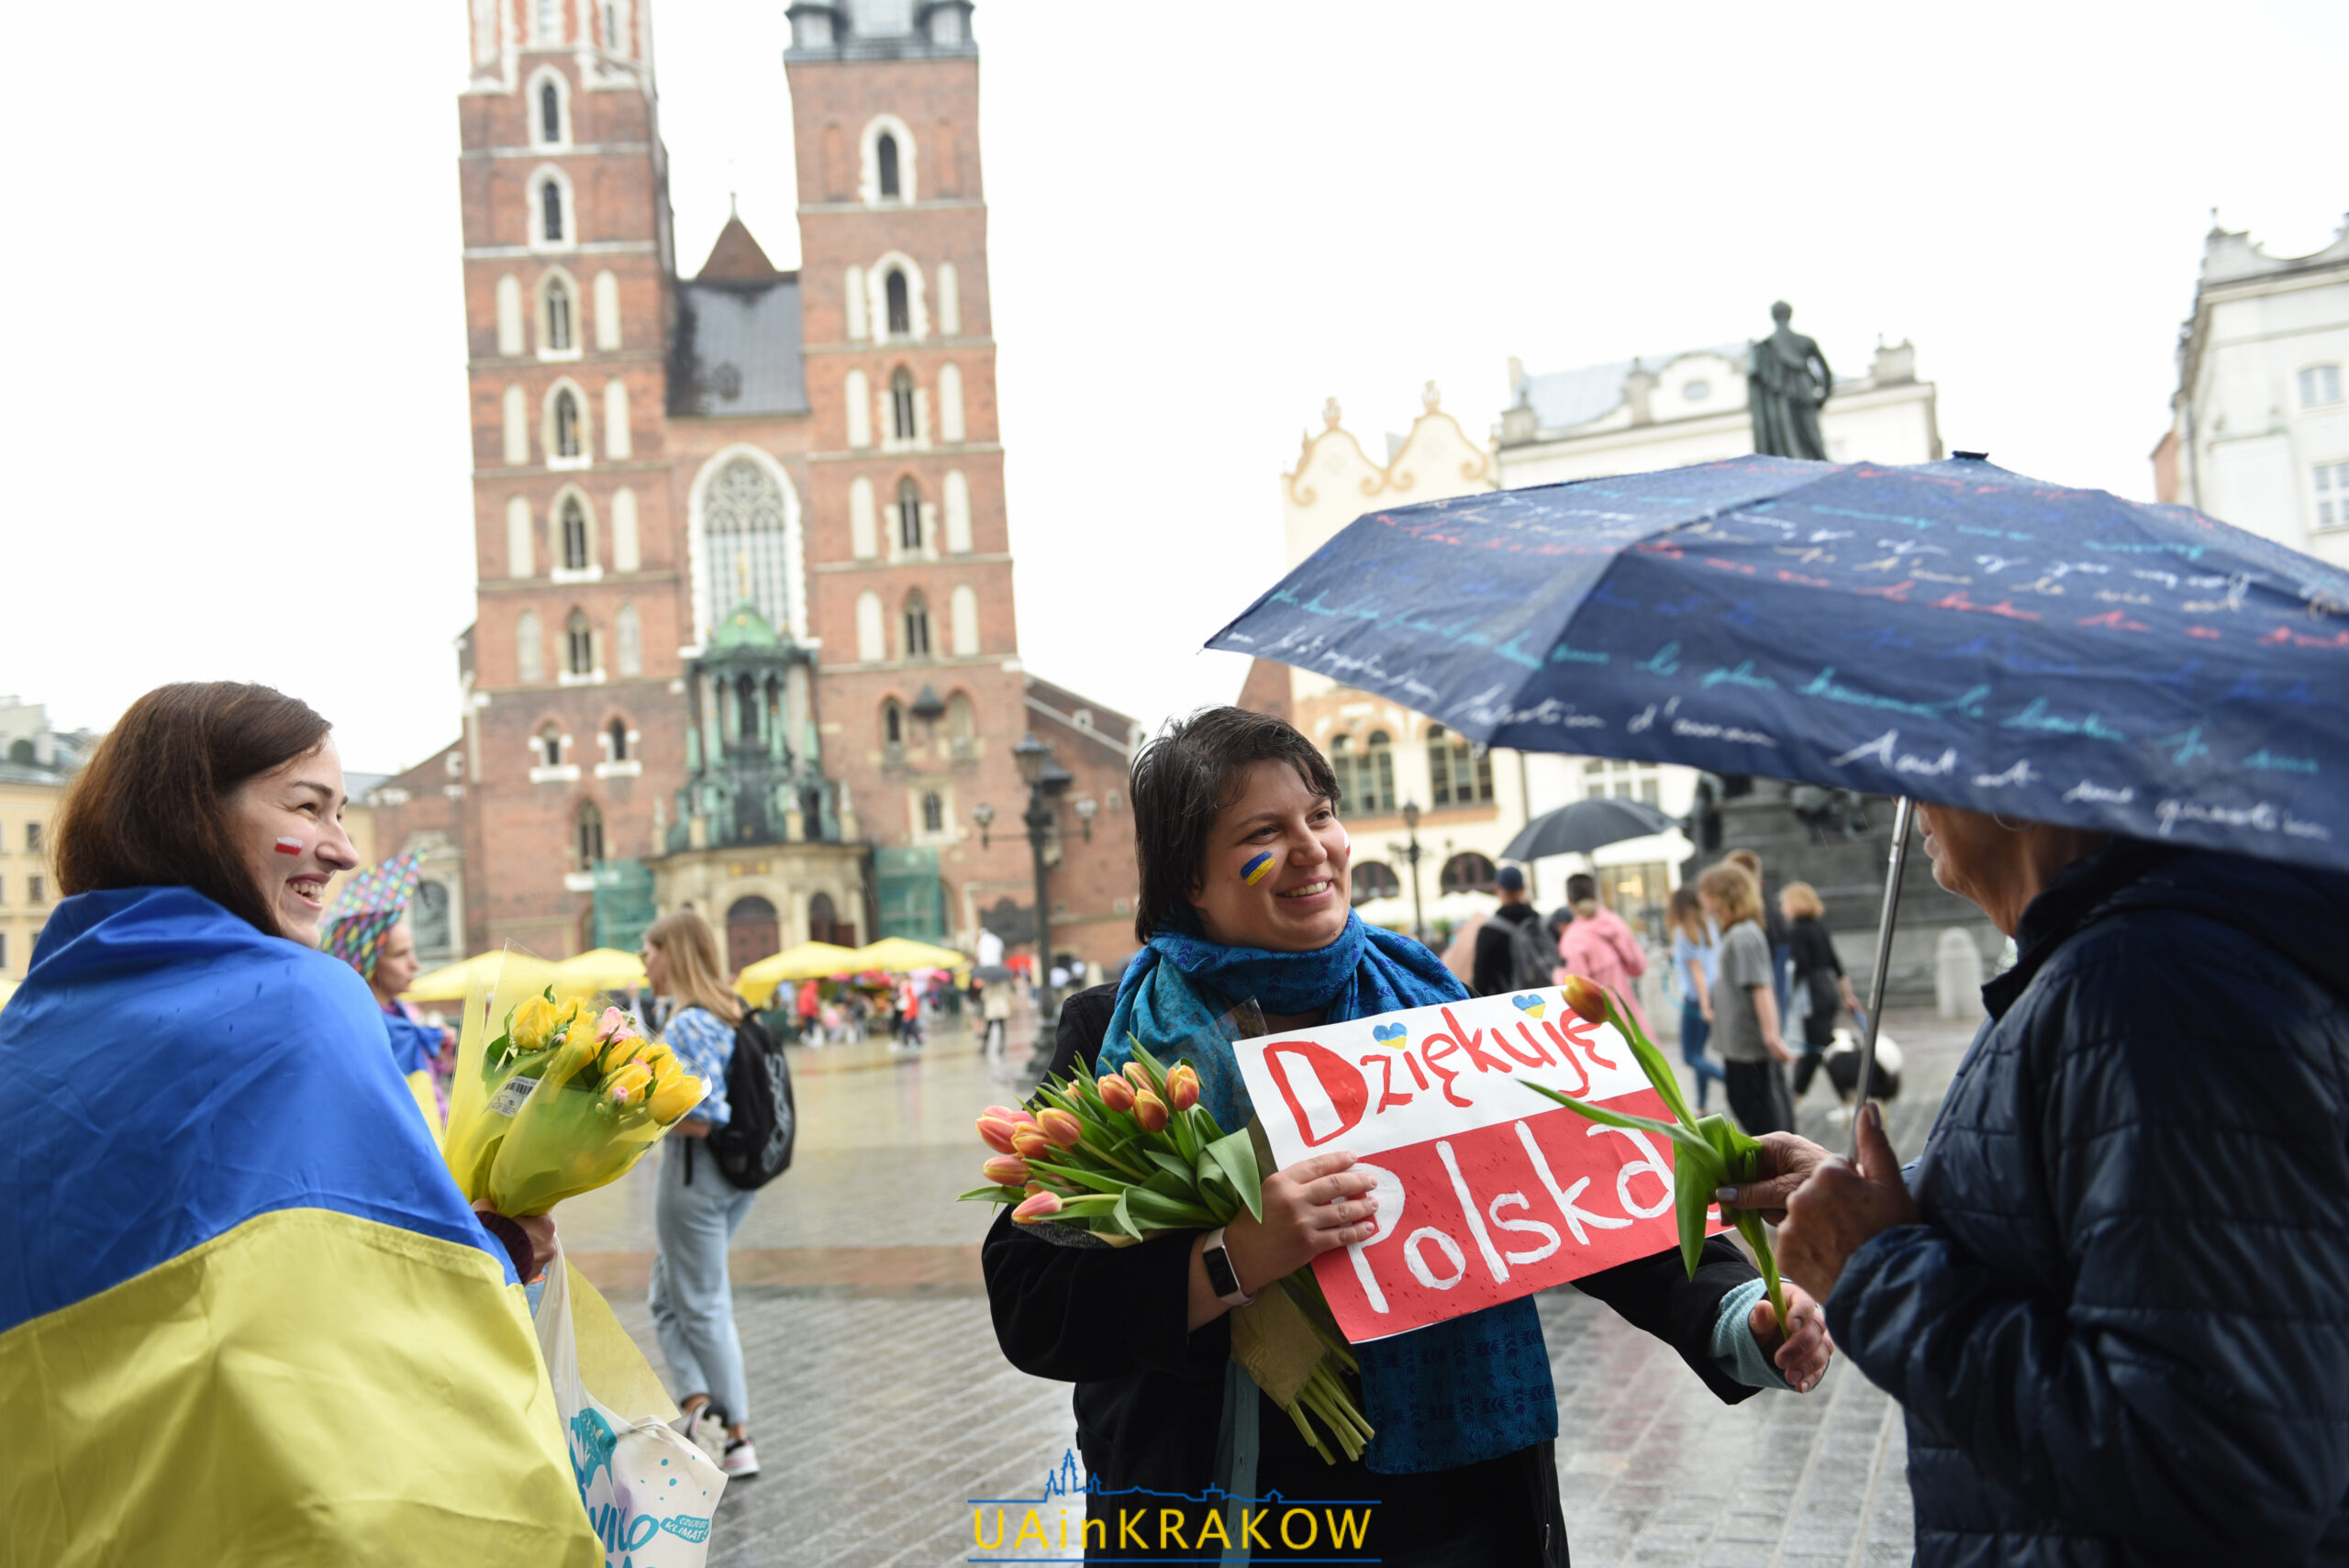 Українці обіймали поляків й дарували їм квіти: у центрі Кракова відбулася акція “Дякую за допомогу” dsc 5159 scaled